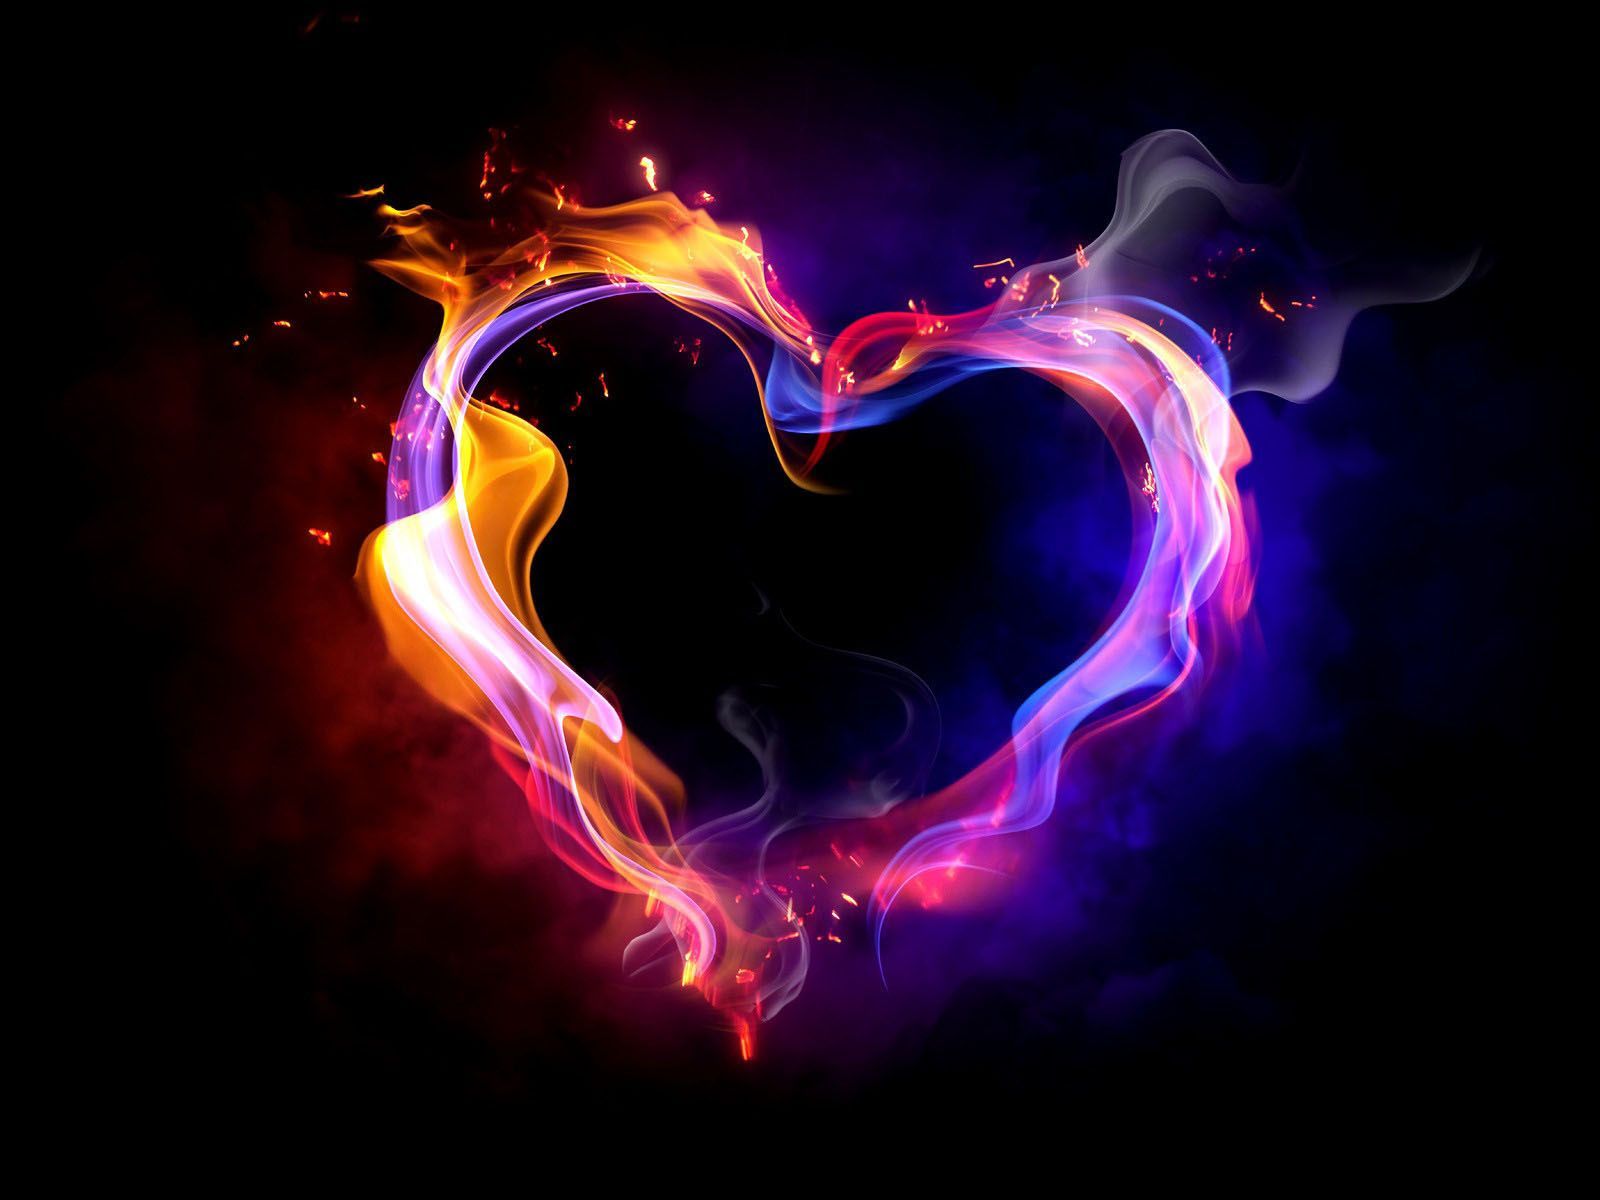  Herzen 3D Hintergrundbild 1600x1200. Fire heart, Heart wallpaper, Love wallpaper